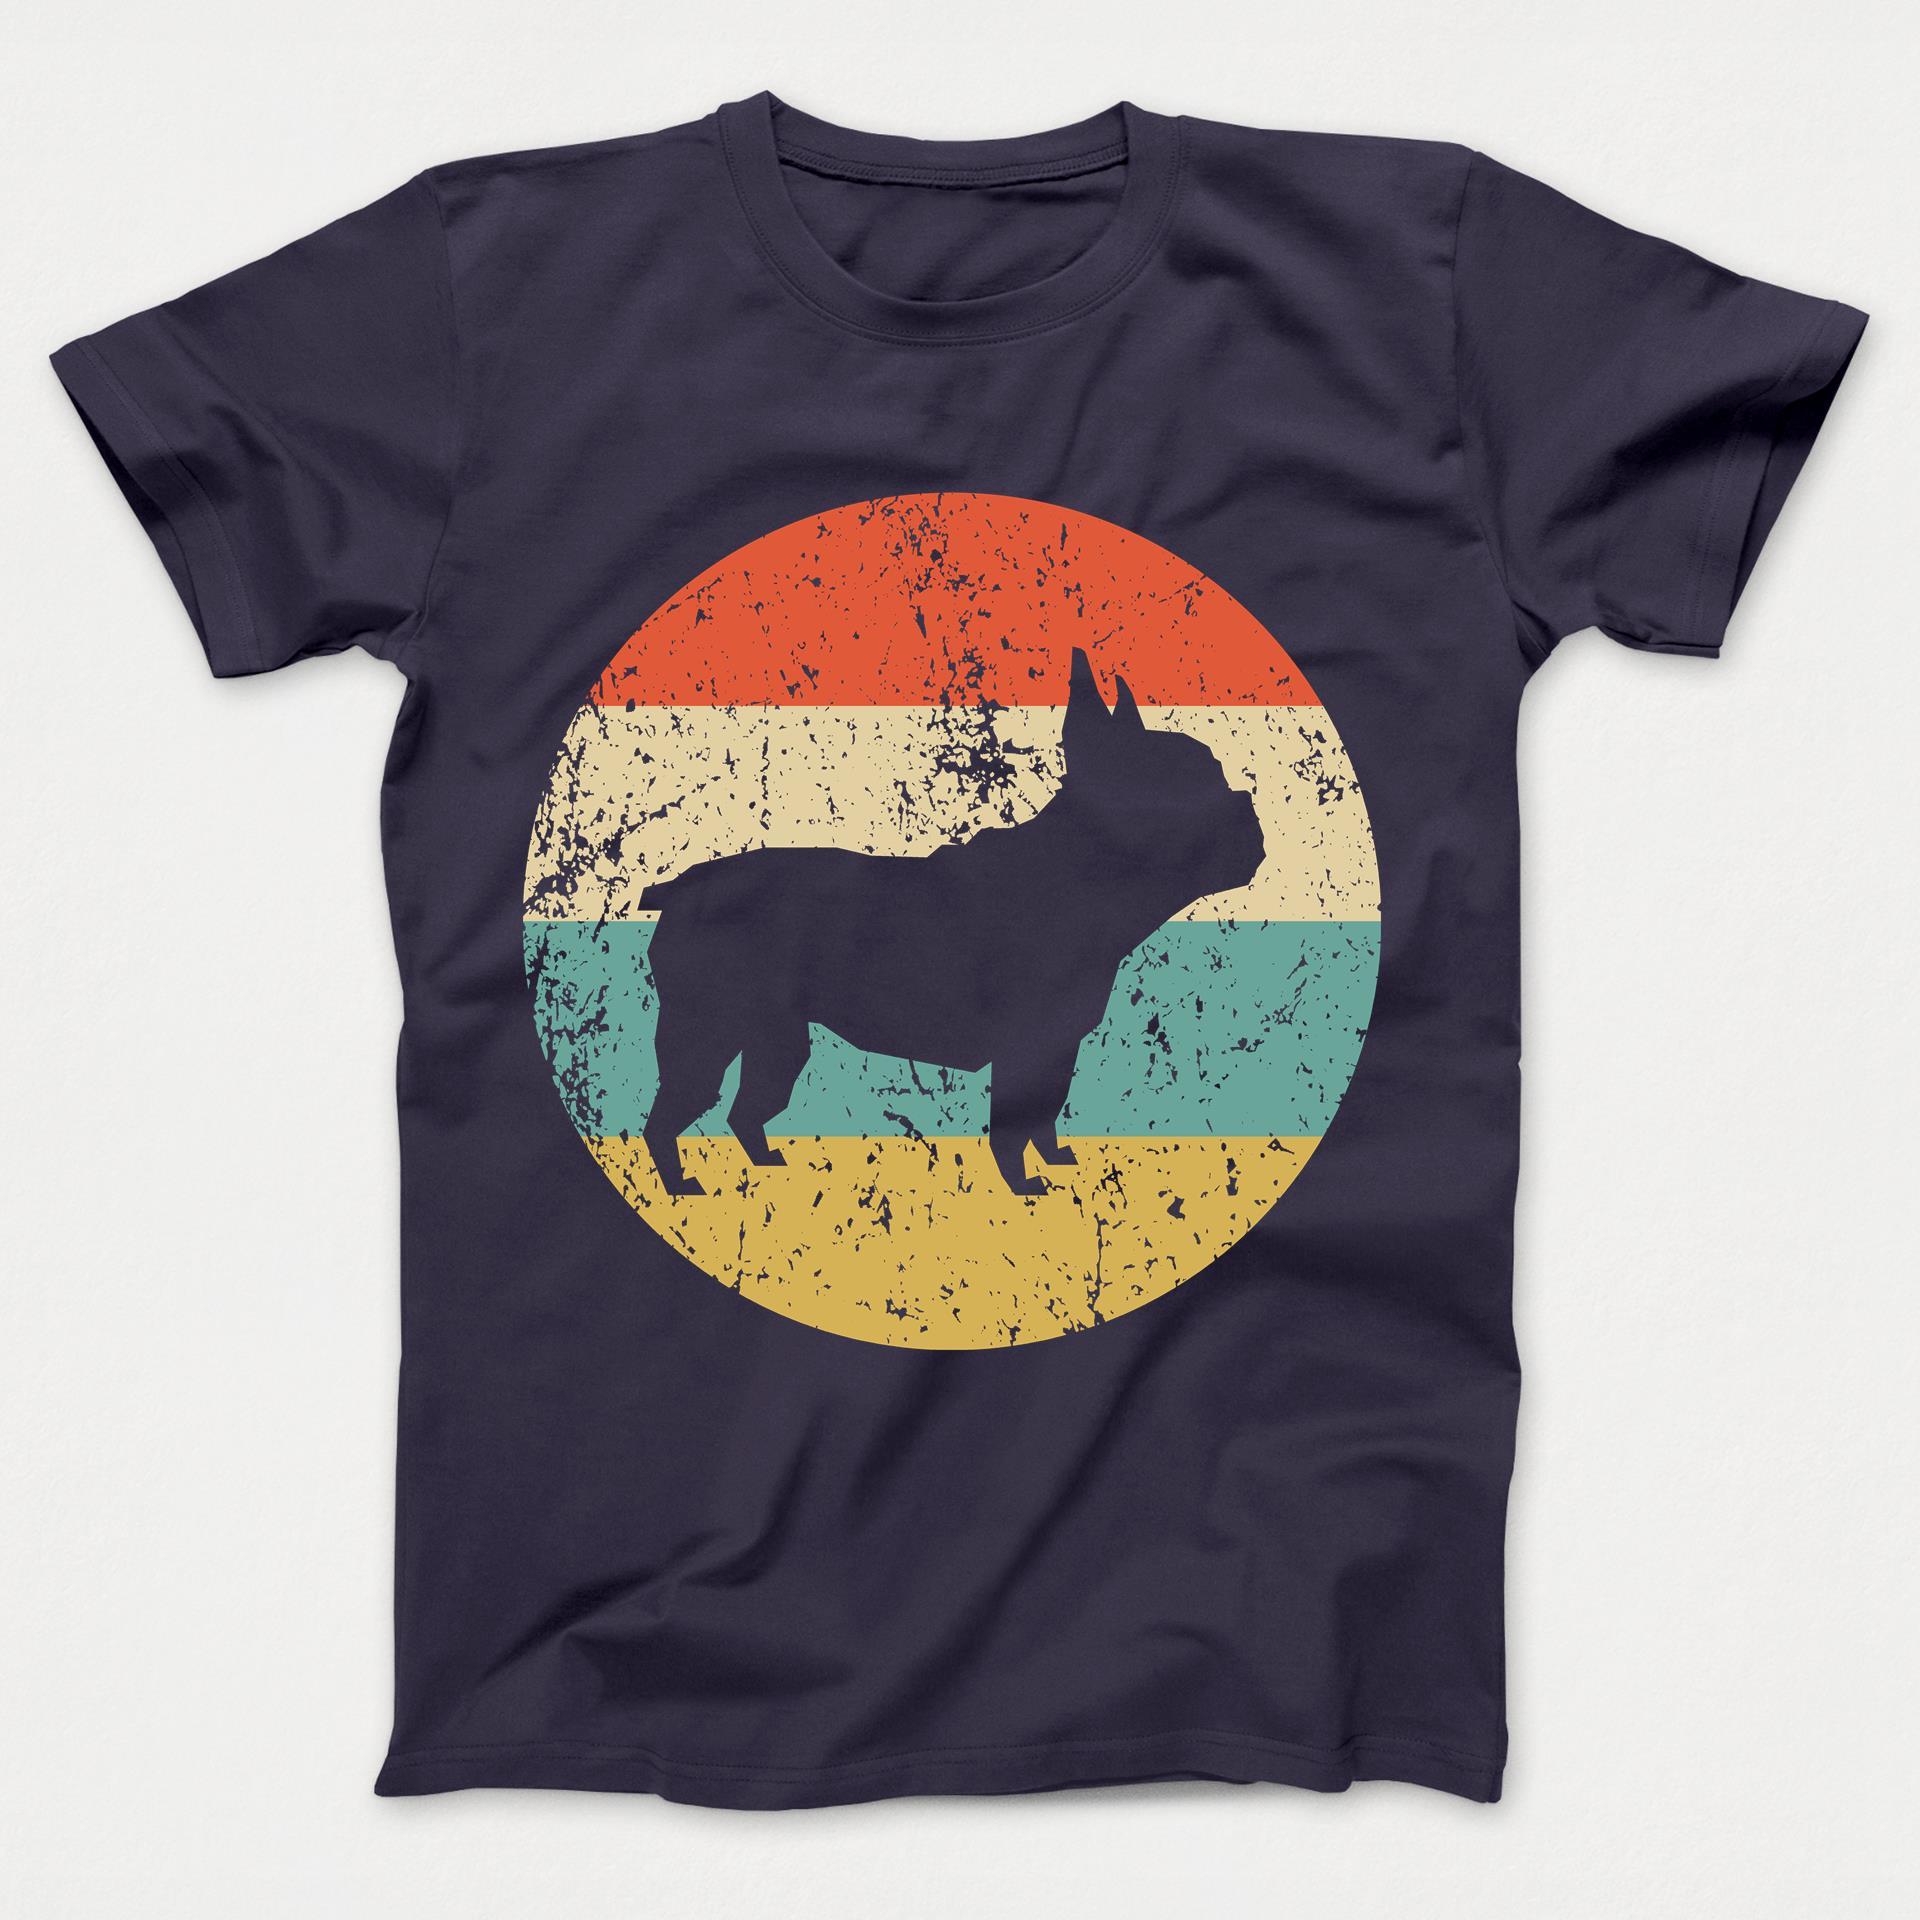 French Bulldog Shirt - Retro French Bulldog Dog Kids T-Shirt